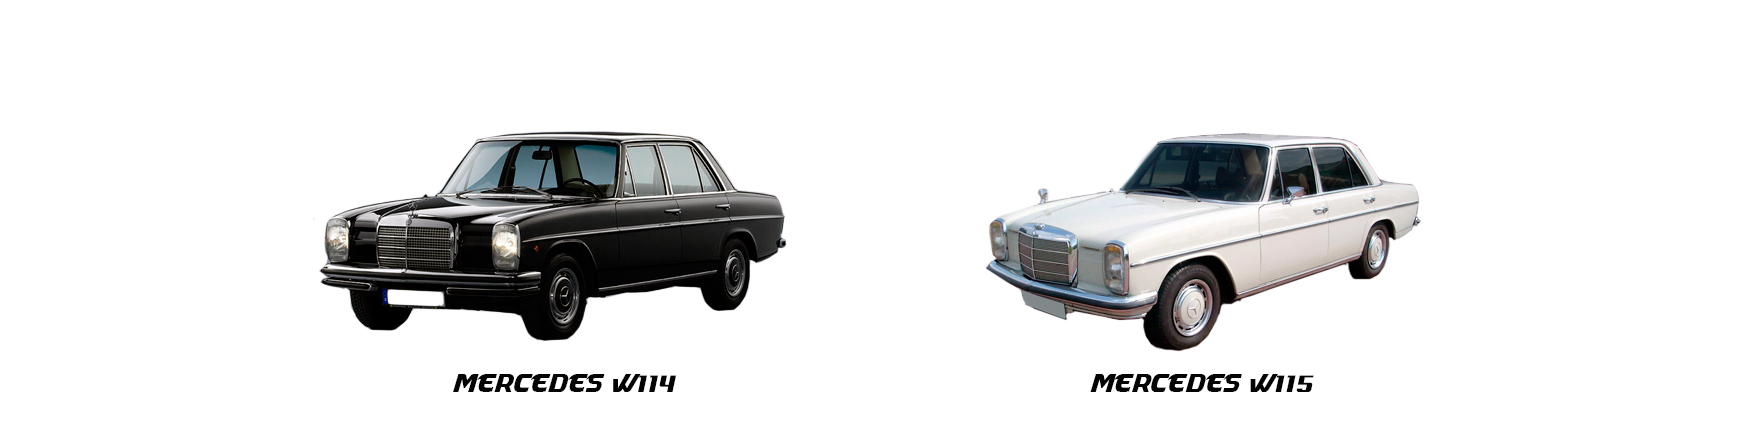 Piezas y Recambios de Mercedes W114 | W115 de 1968 a 1977 | Veramauto.es